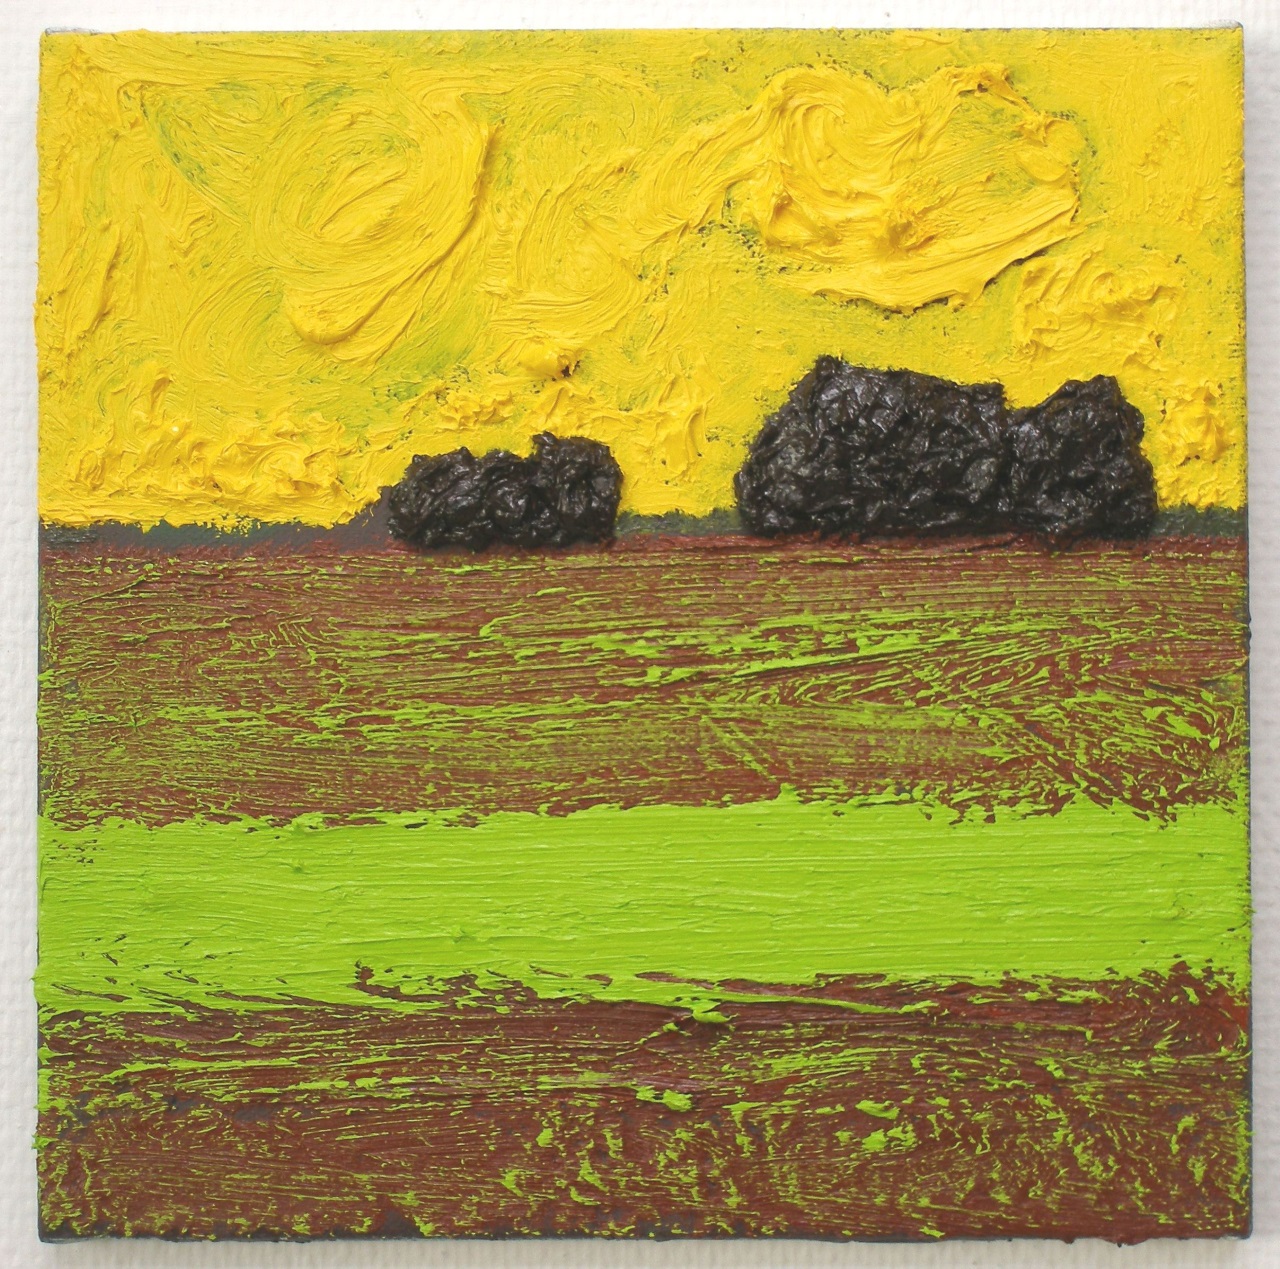 Soil/rest, oil-mixedmedia on canvas, 30x30cm